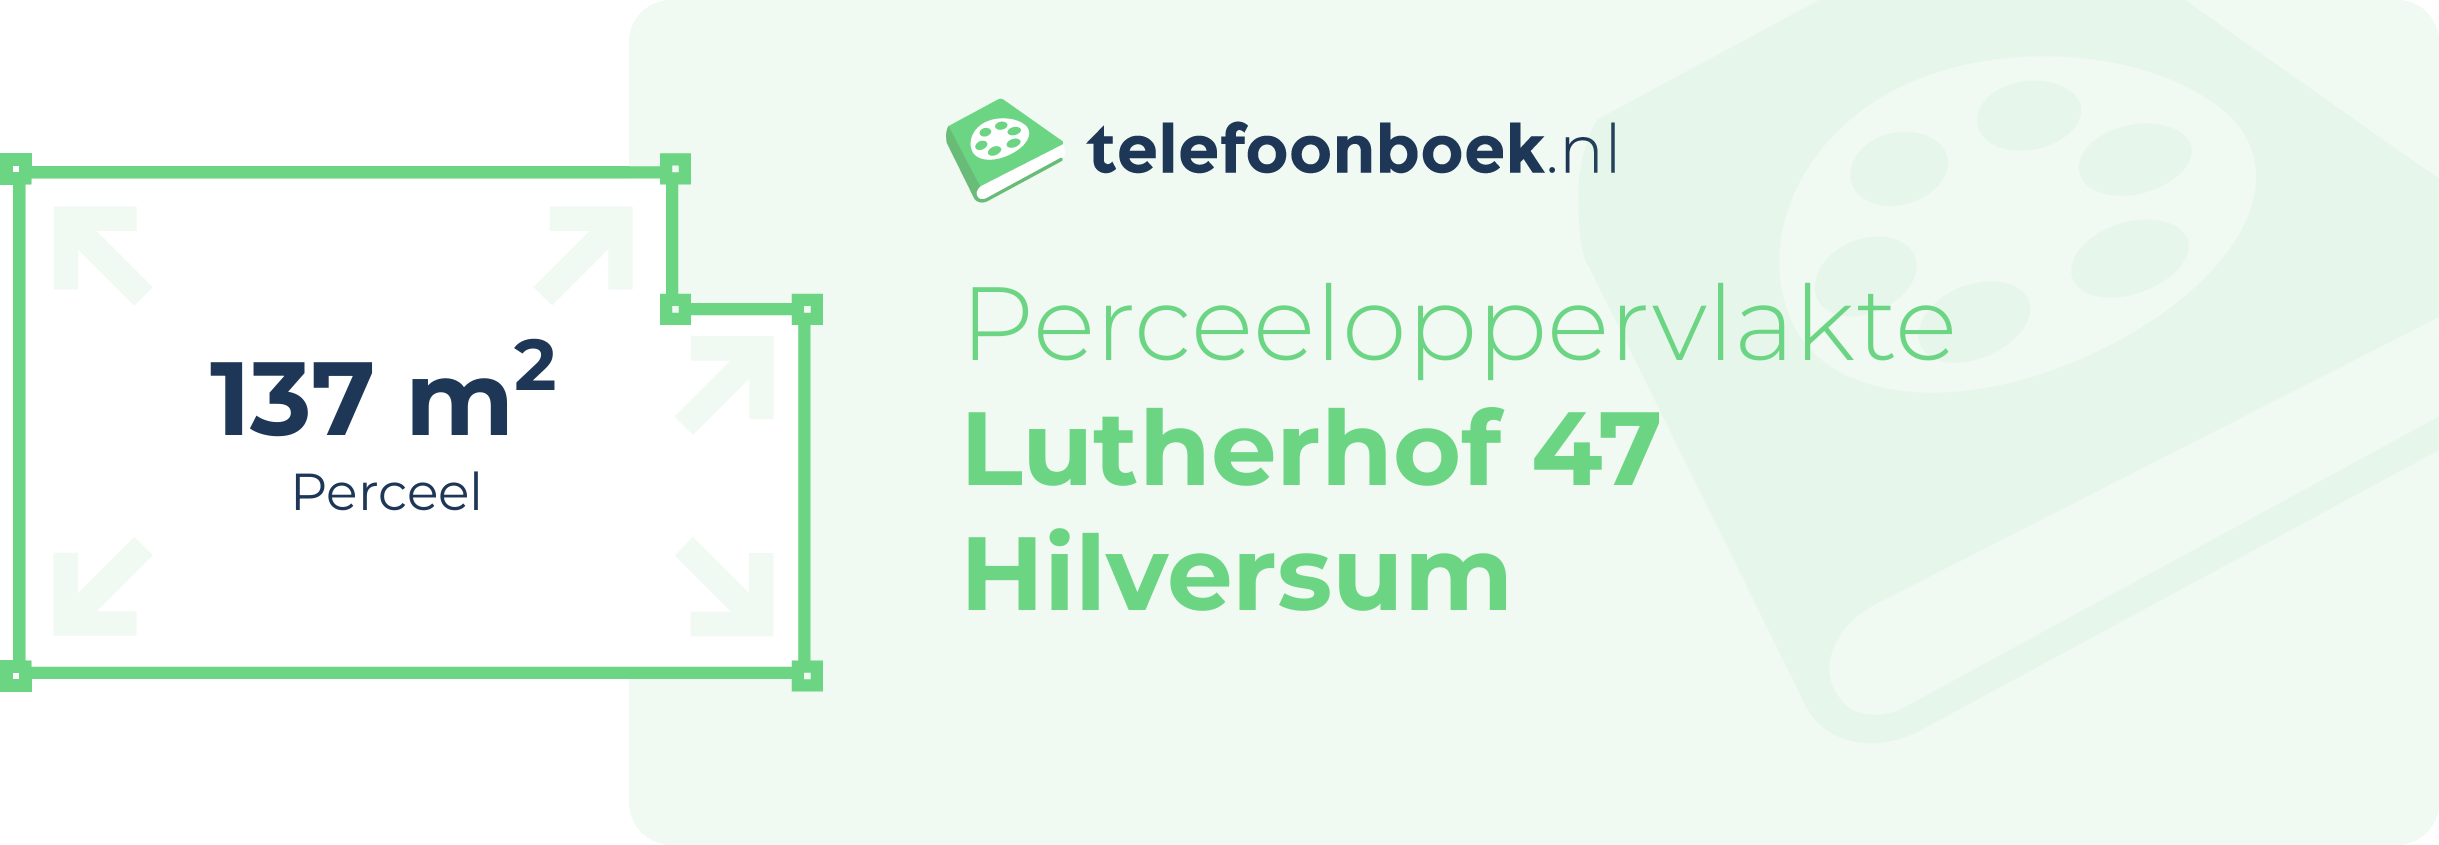 Perceeloppervlakte Lutherhof 47 Hilversum